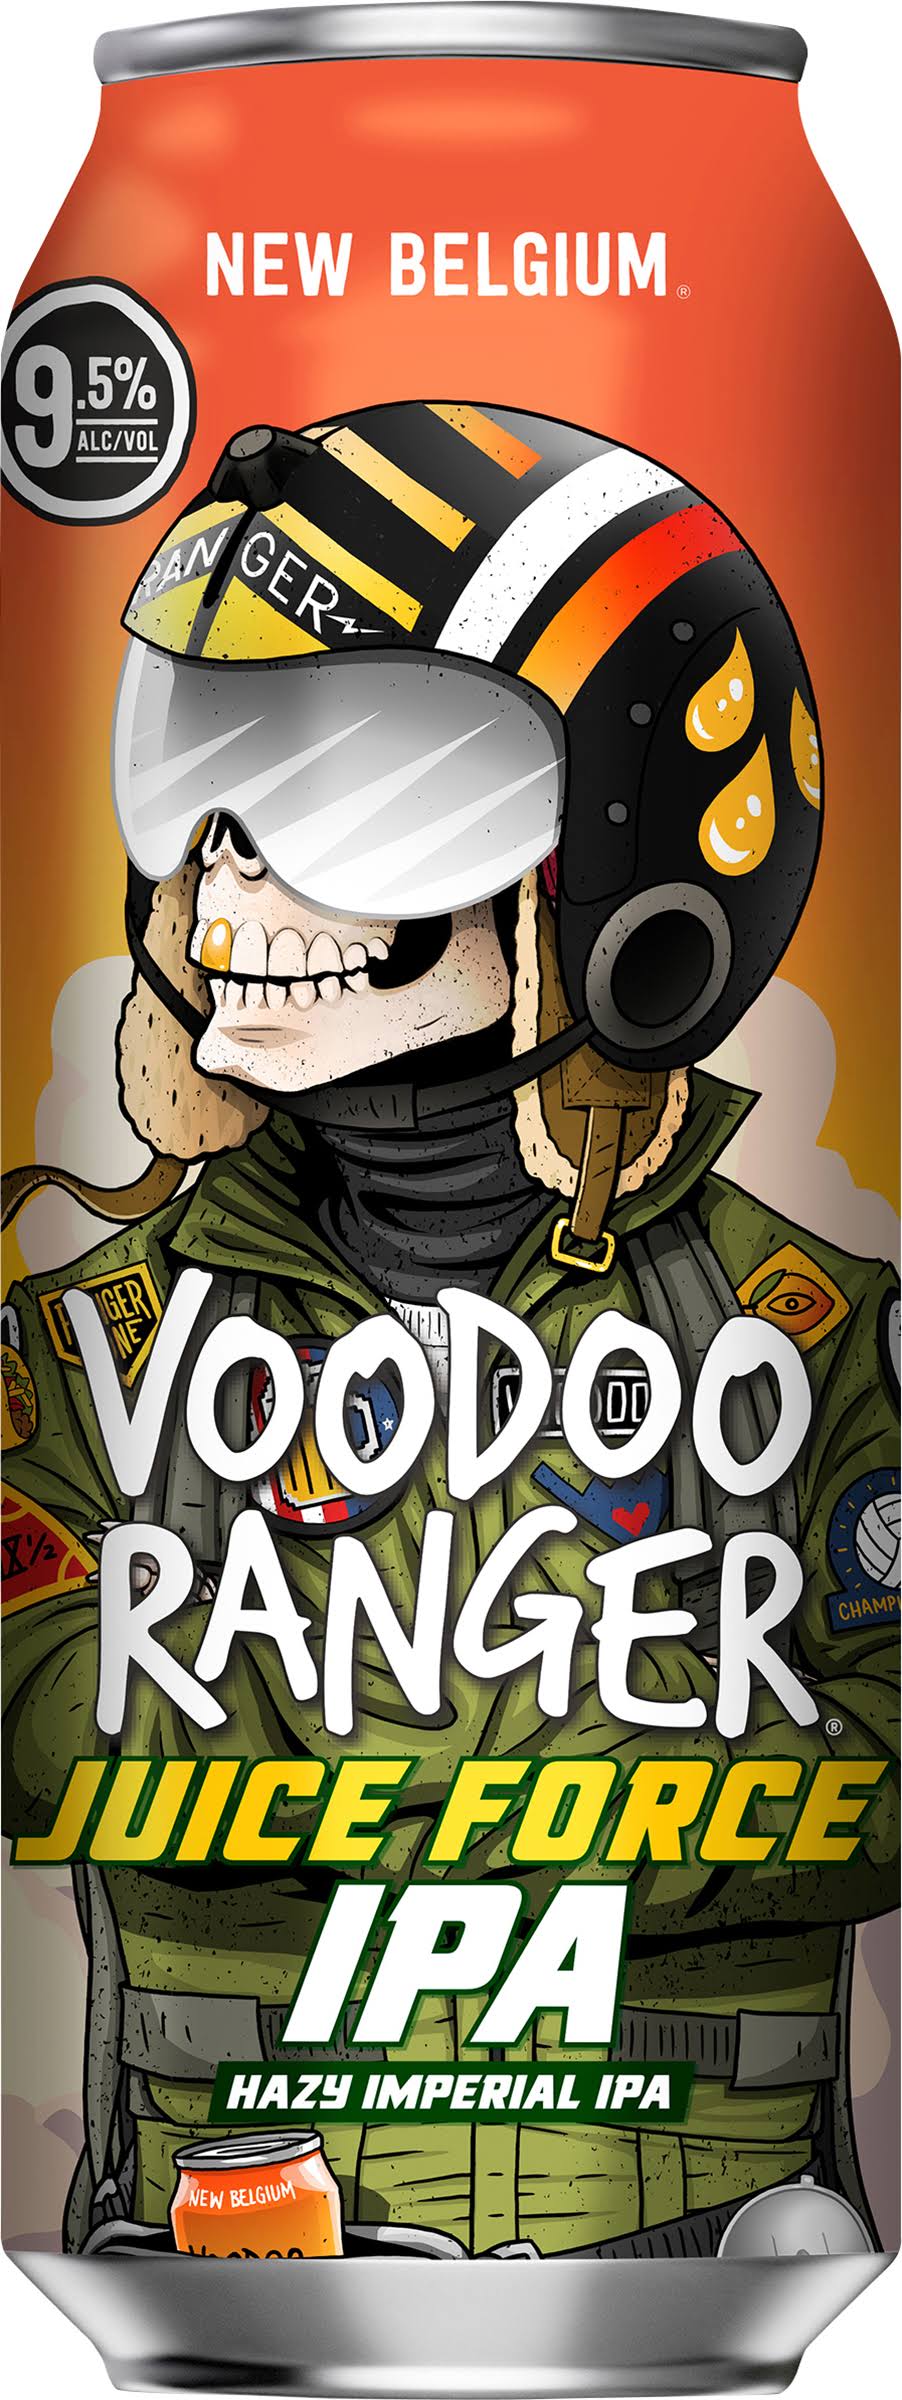 New Belgium Voodoo Ranger Beer, Hazy Imperial IPA, Juice Force - 19.2 fl oz